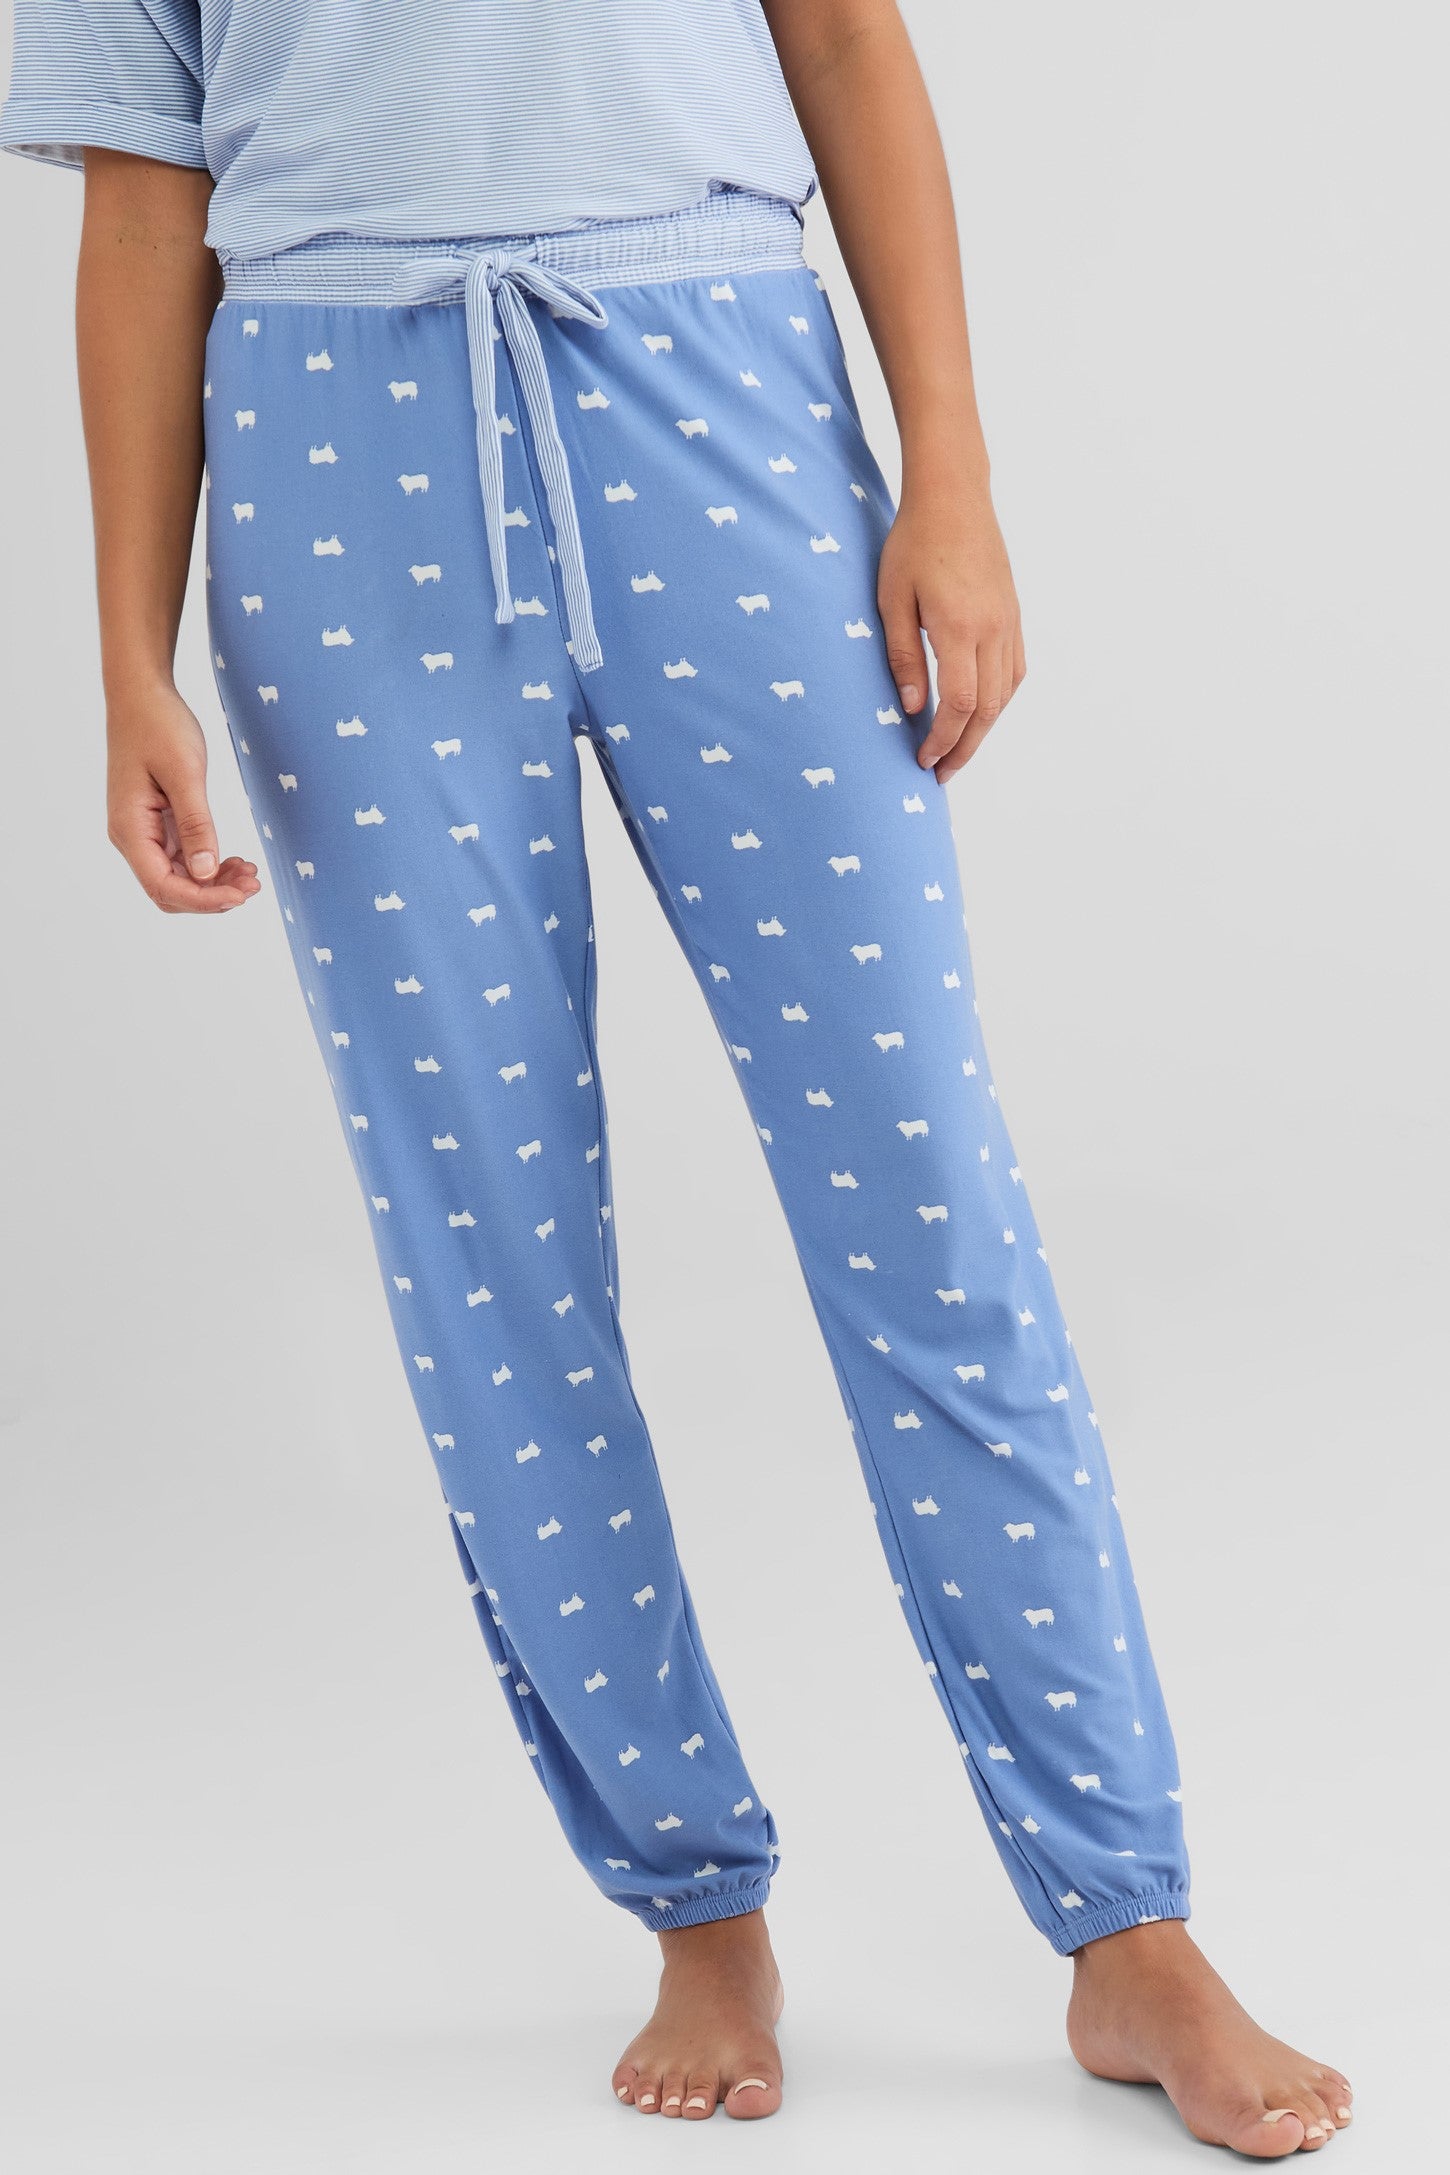 Pantalon jogger pyjama - Femme && BLEU MULTI